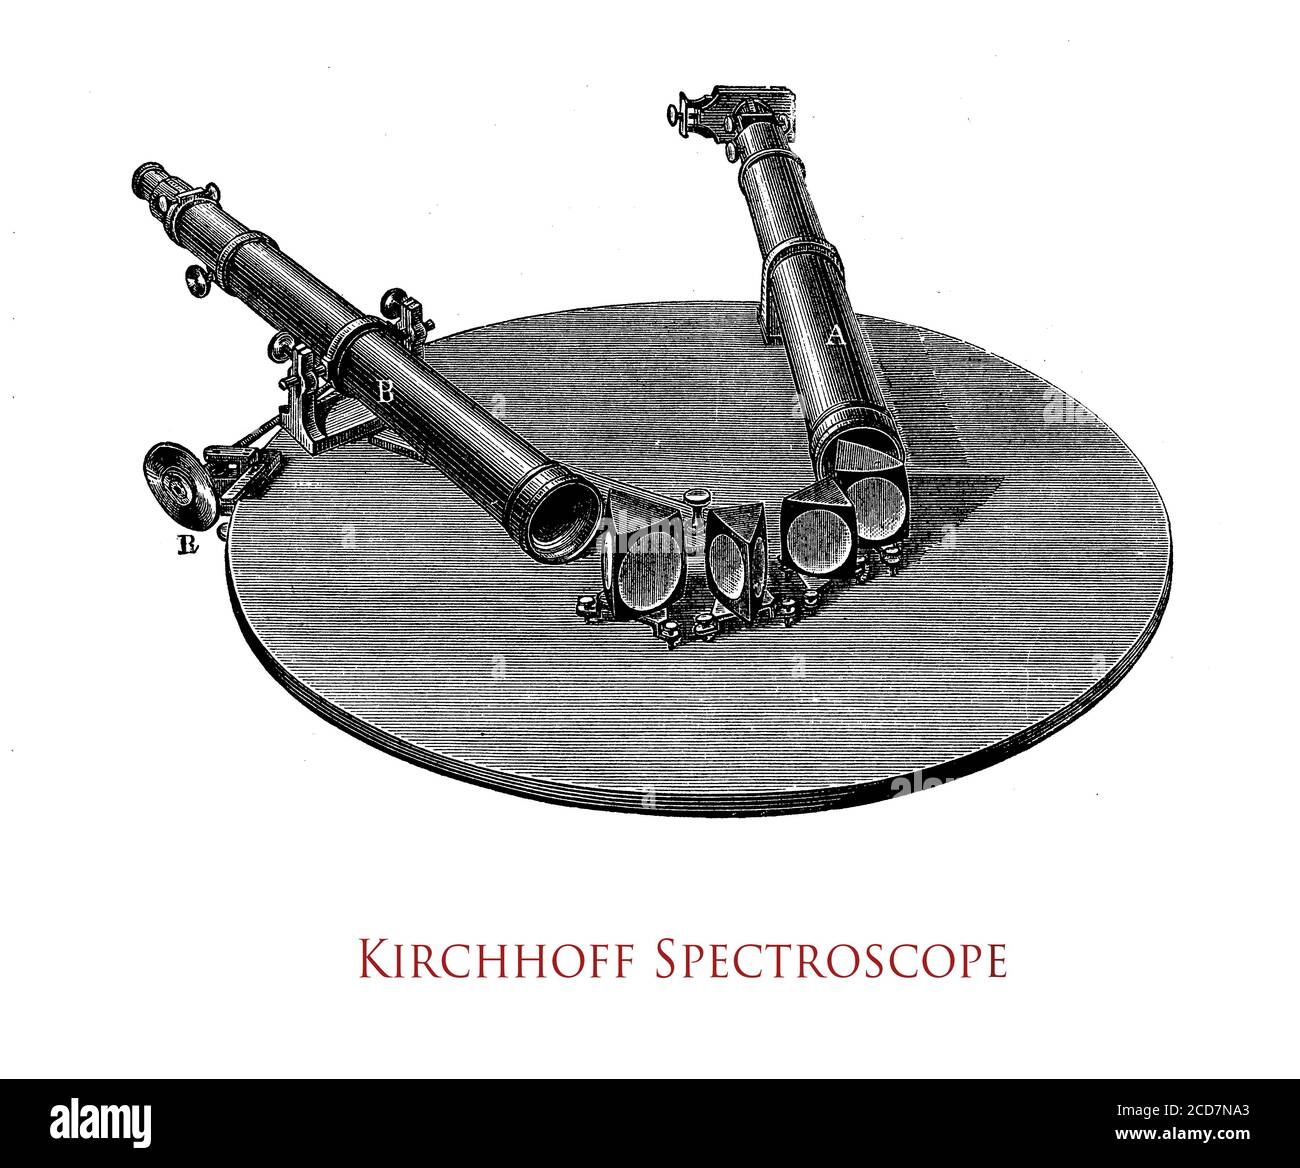 Spettrometro ottico o spettroscopio Kirchhoff, strumento per misurare le proprietà della luce su una porzione specifica dello spettro elettromagnetico nell'analisi spettroscopica per identificare i materiali Foto Stock